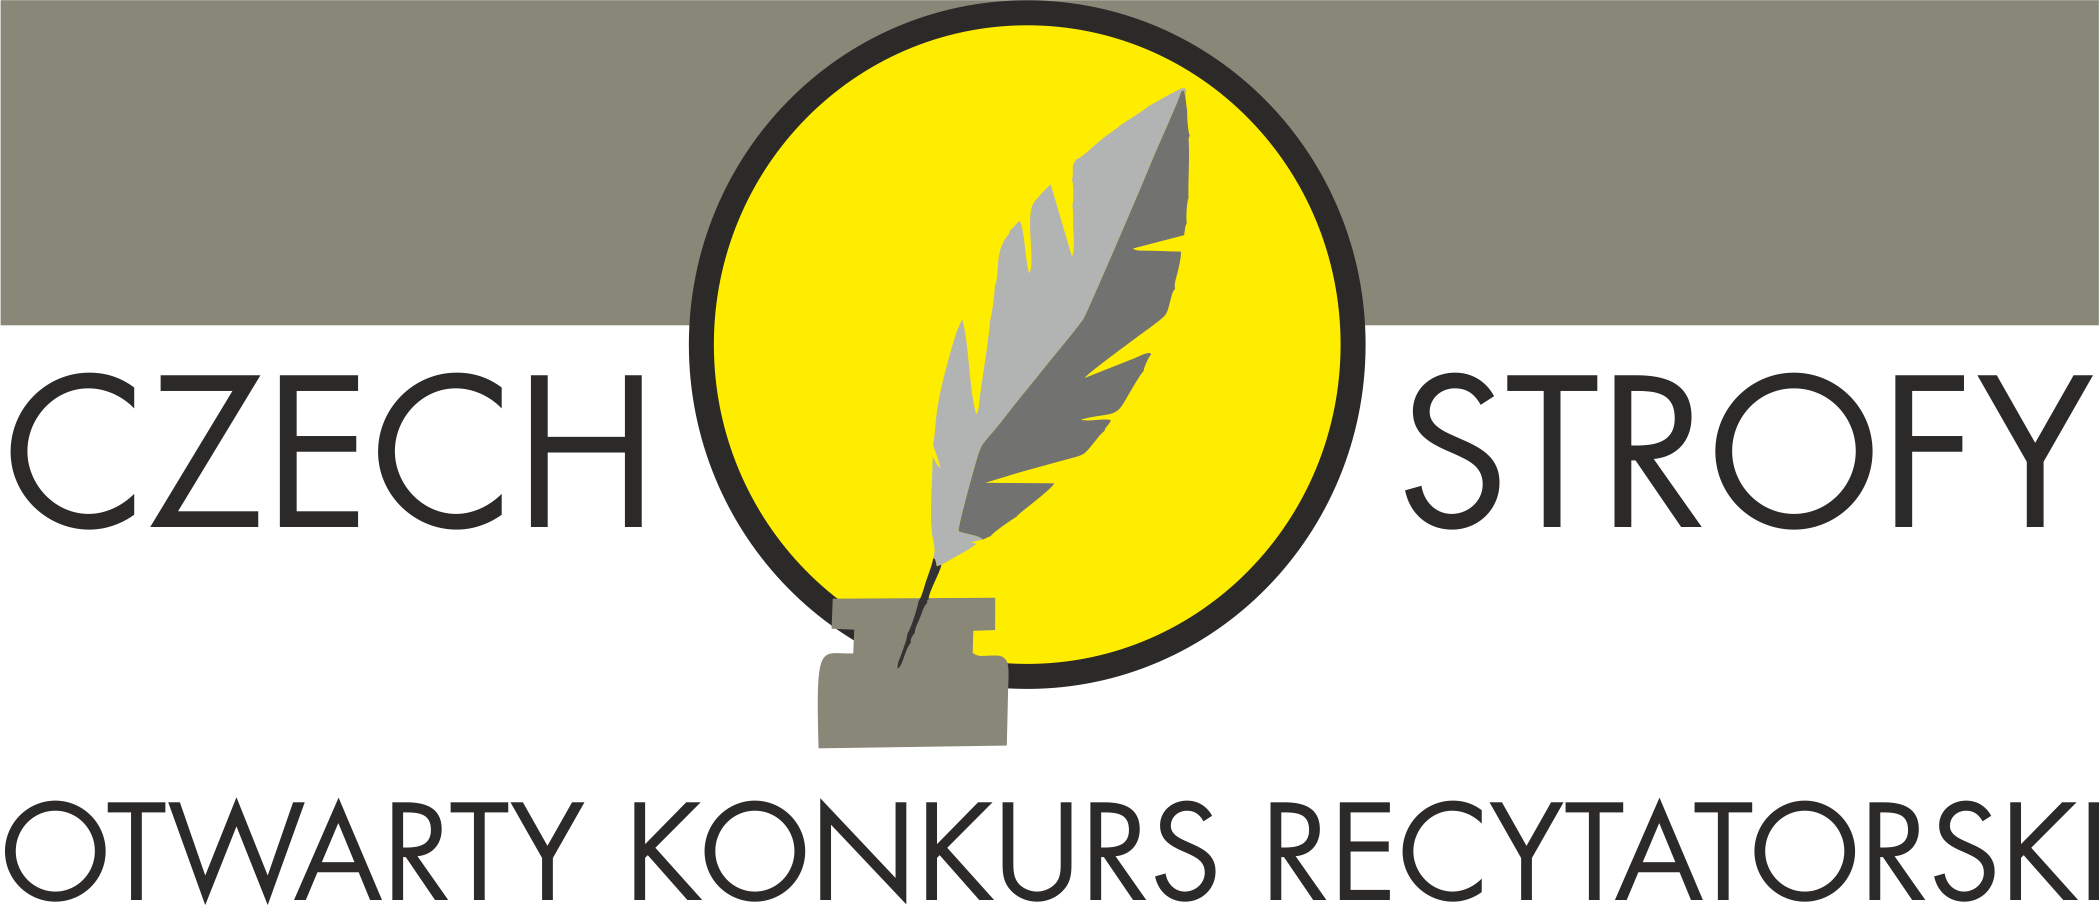 Czechostrofy logo konkursu recytatorskiego